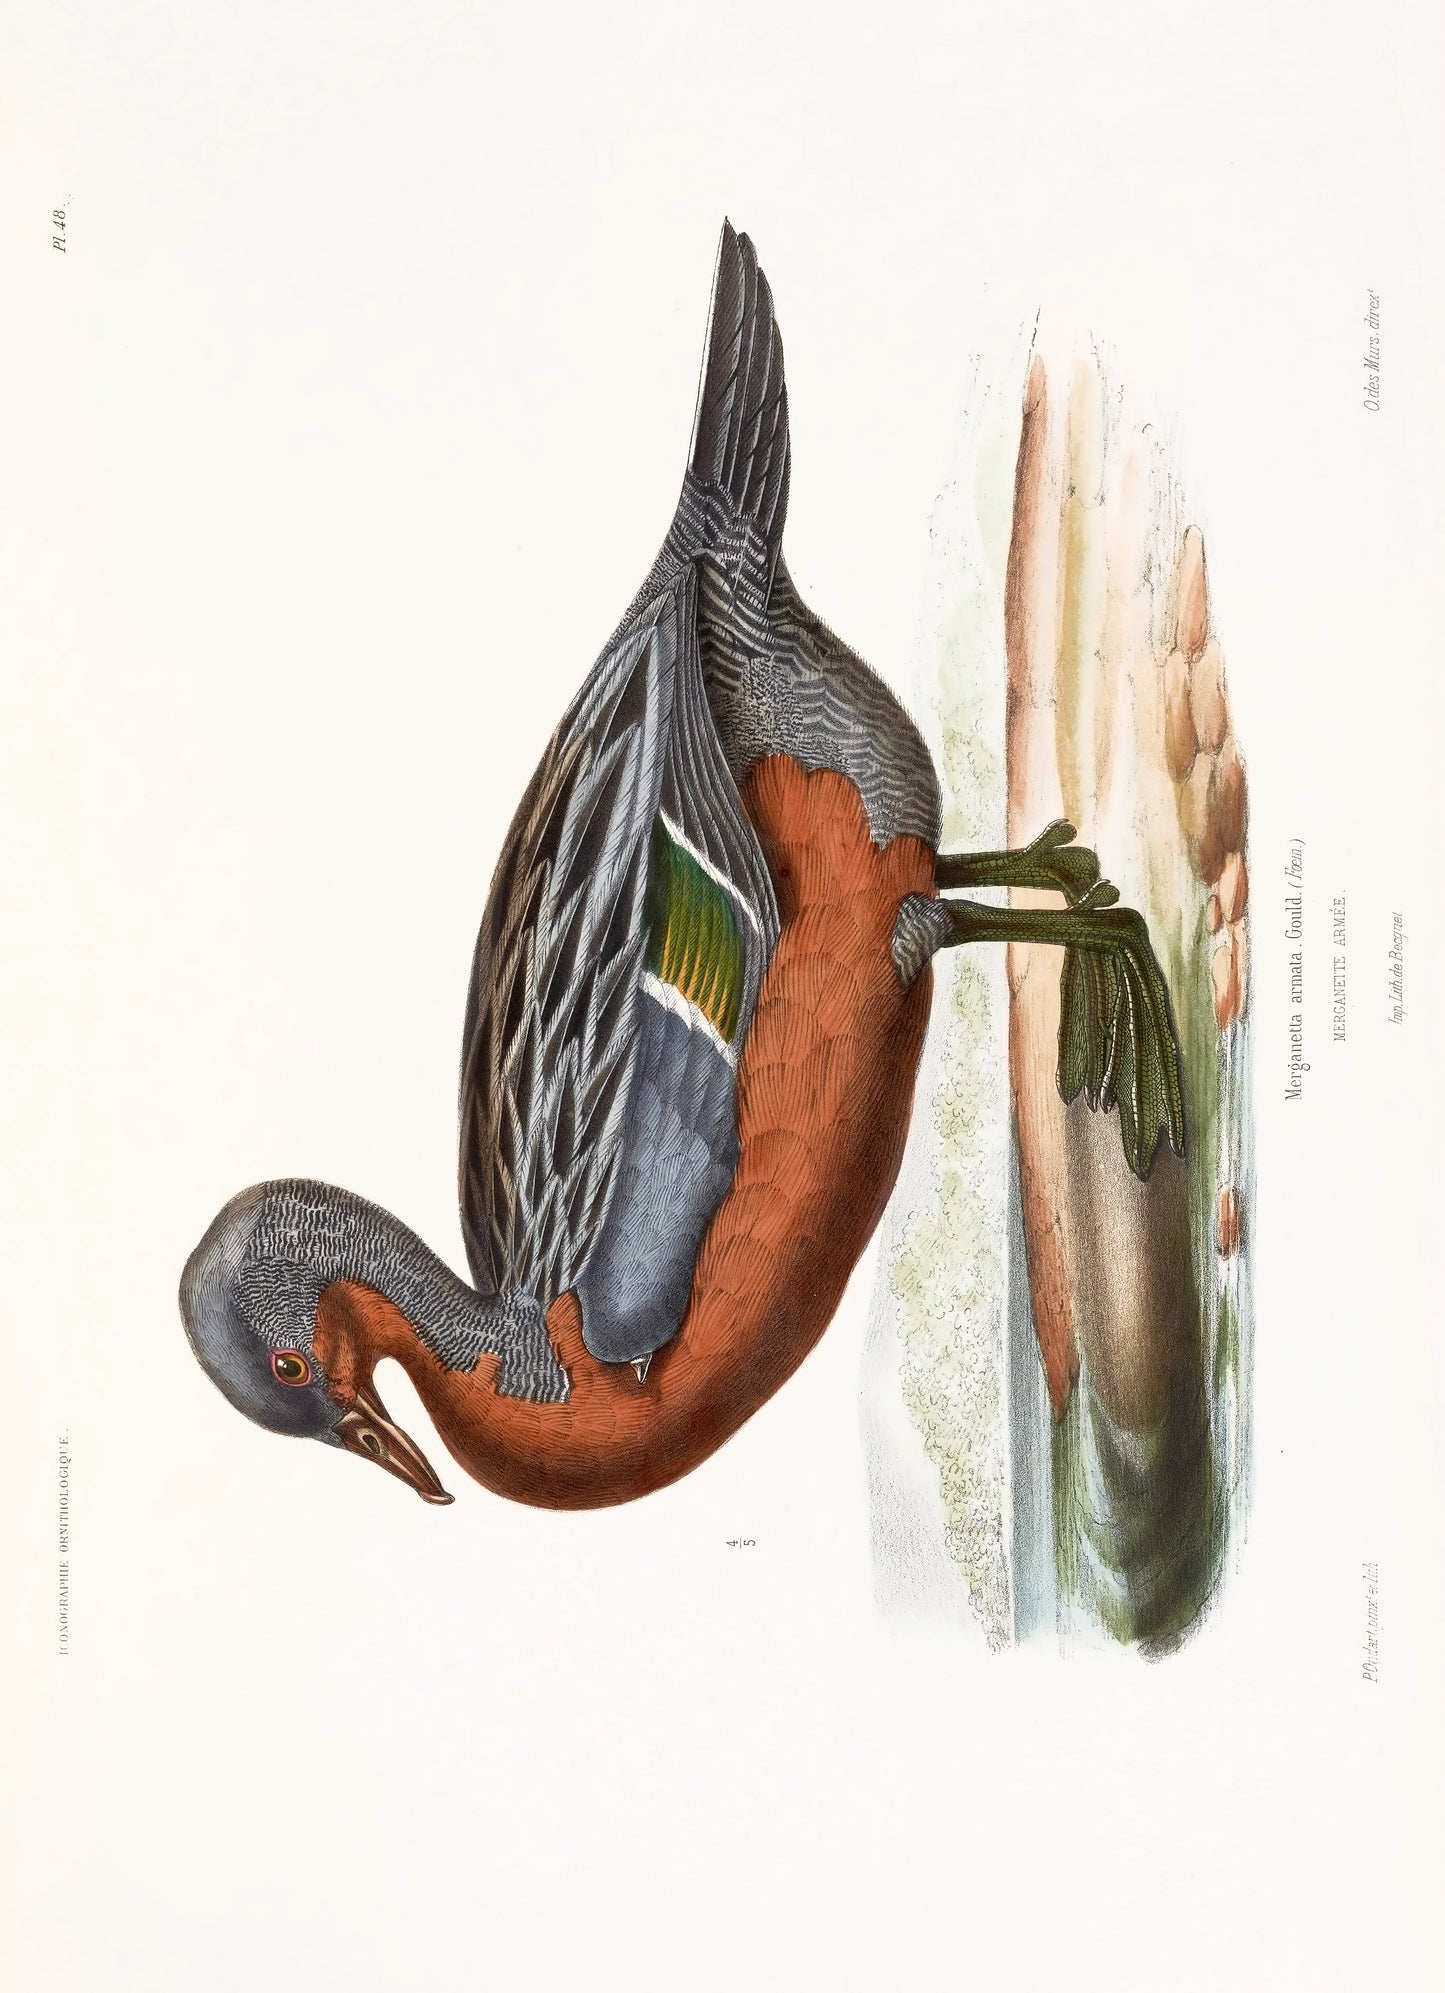 Iconographie Ornithologique [72 Images]